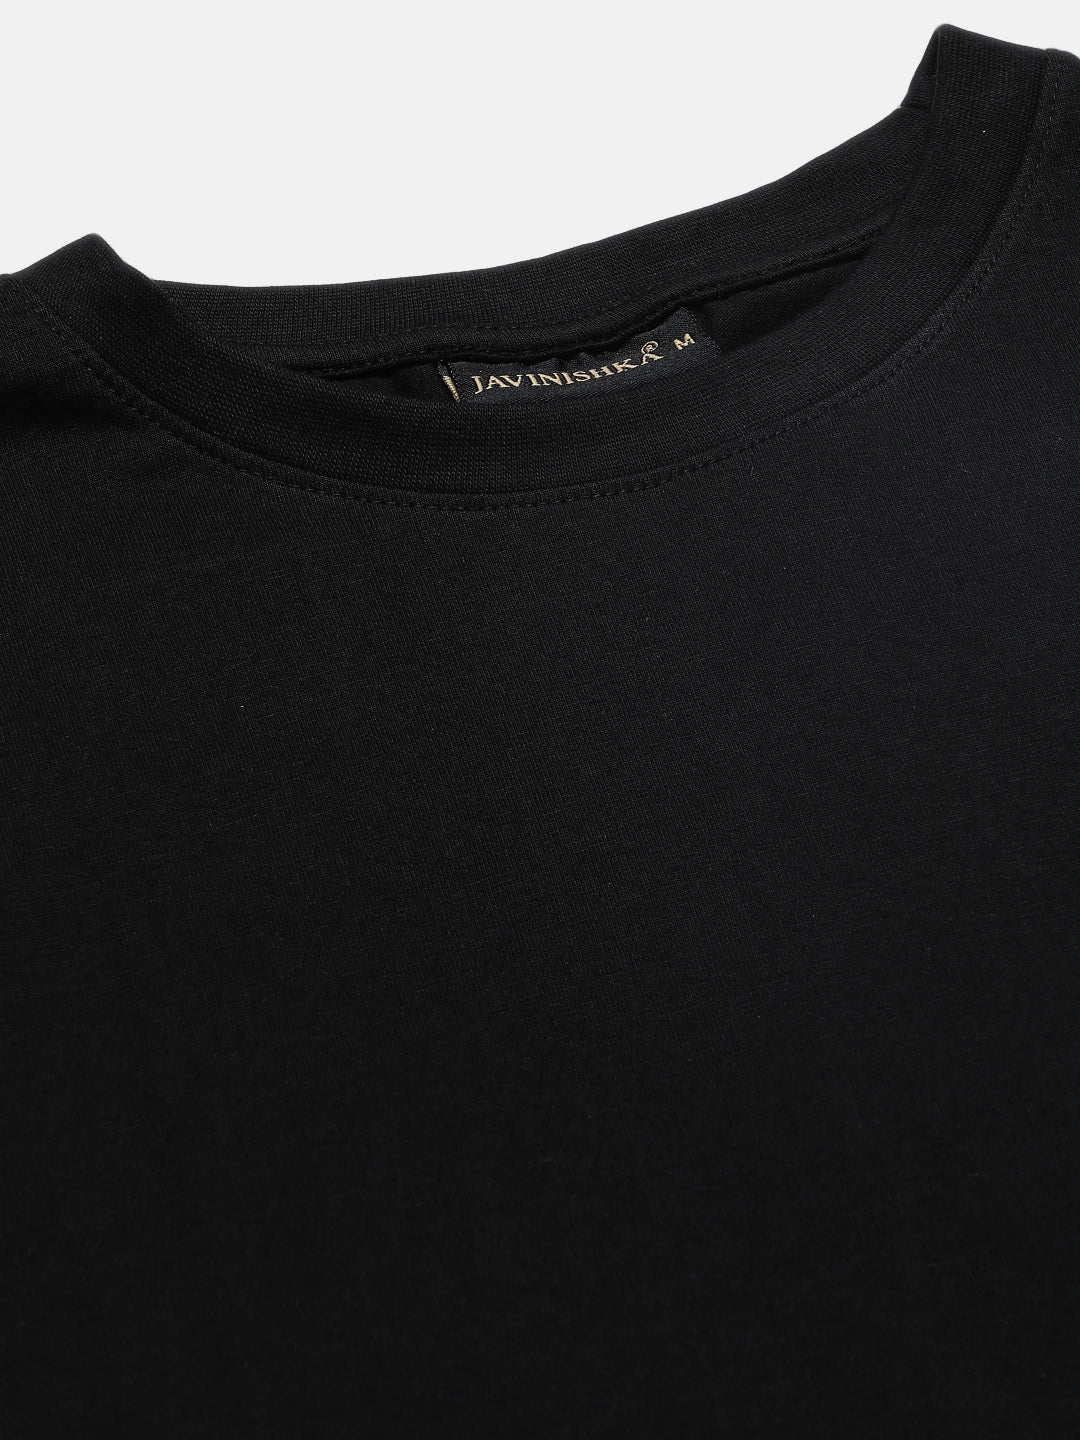 Premium Black Solid Round Neck Unisex Comfort Fit T-Shirt